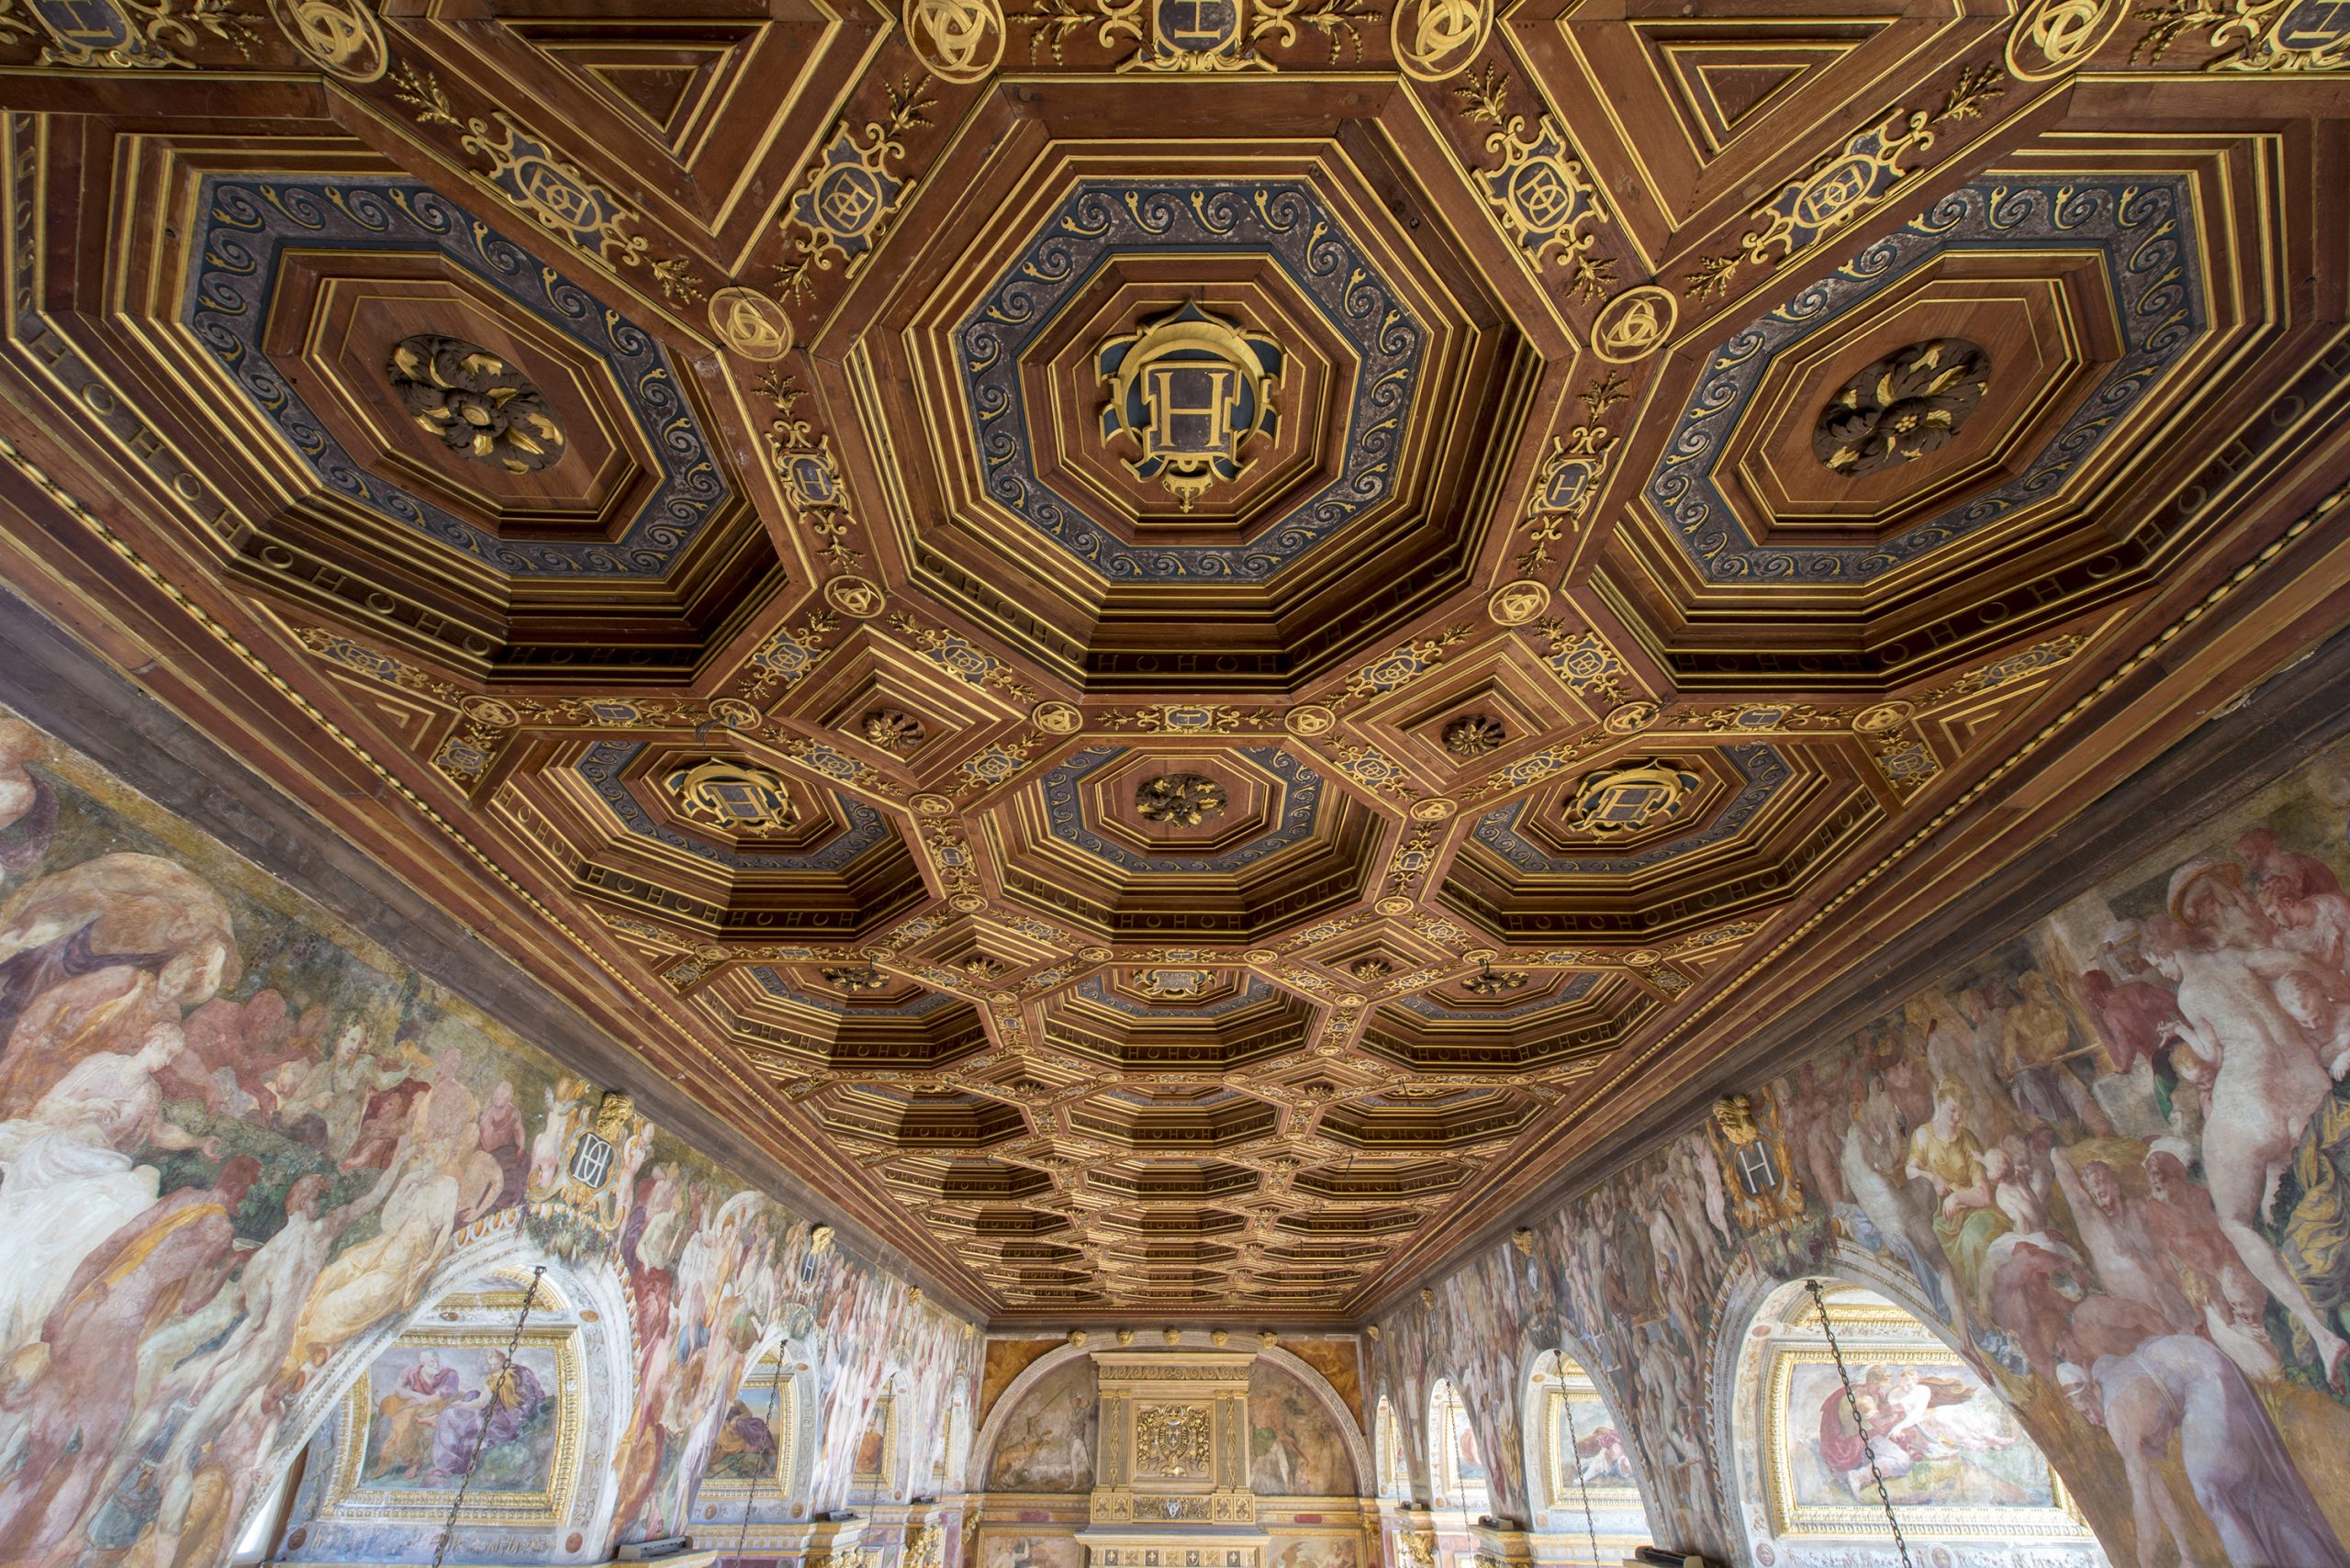 The Renaissance Rooms Château de Fontainebleau